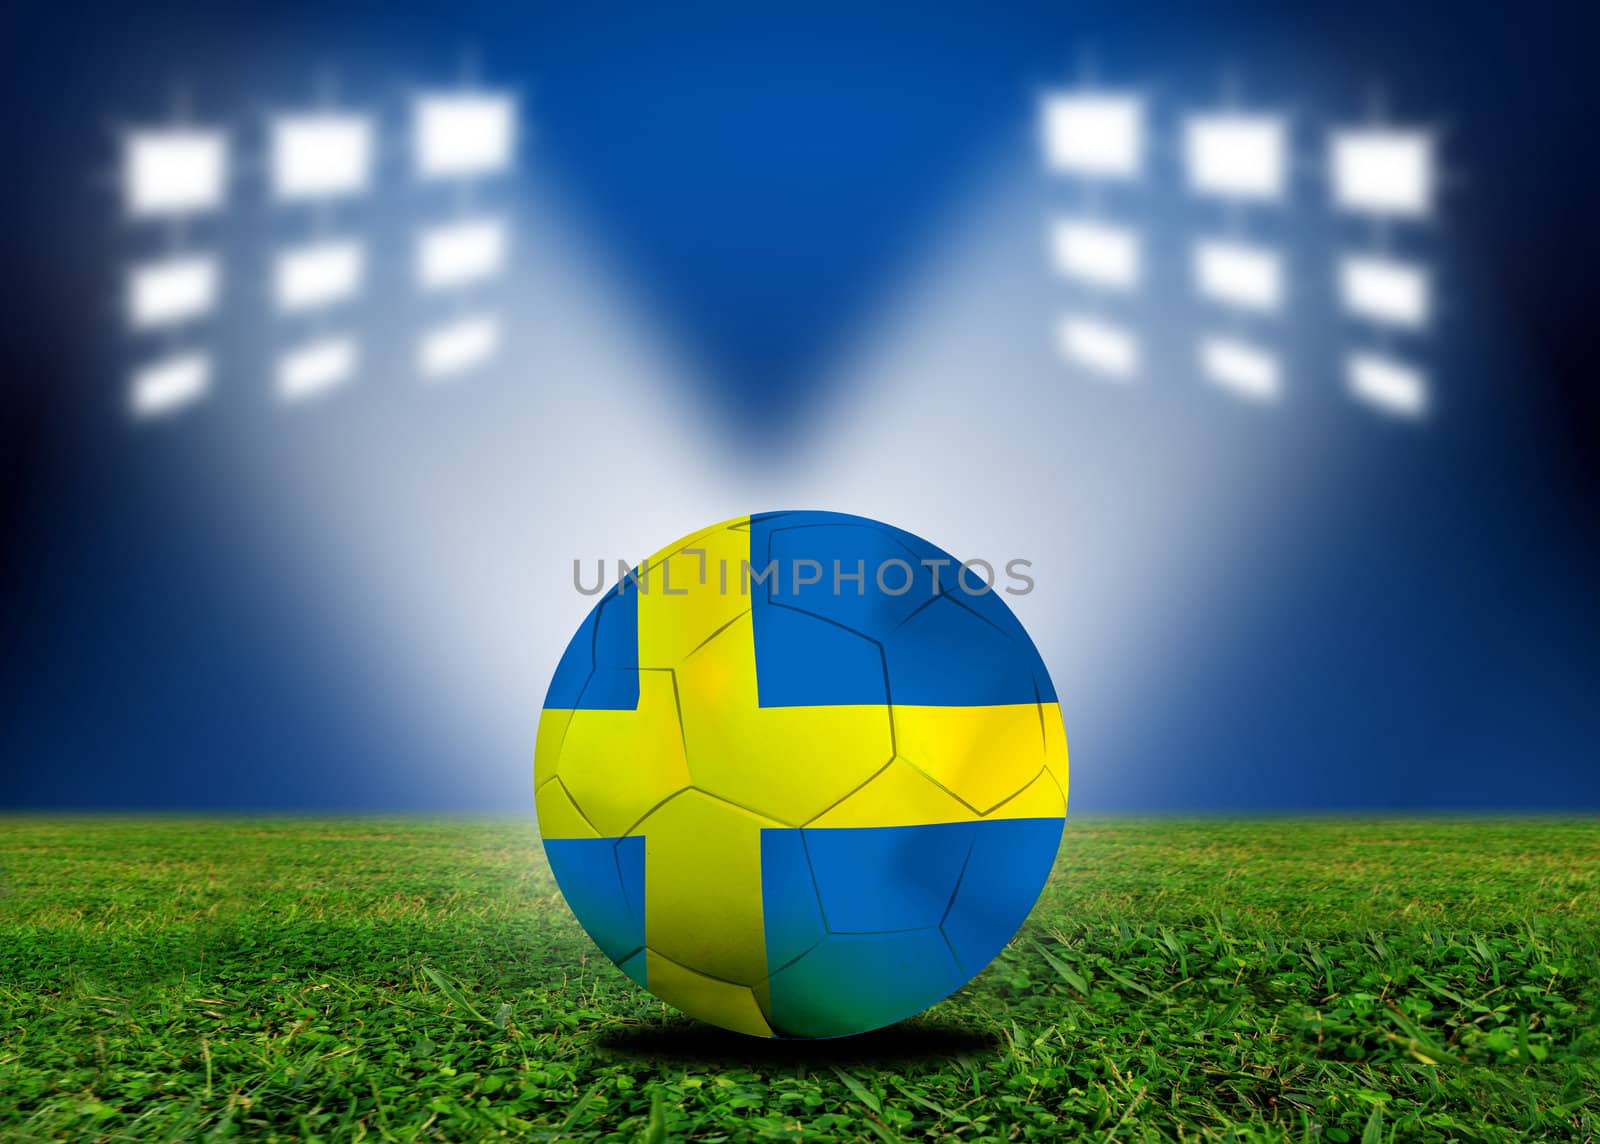 Sweden  soccer  ball in european